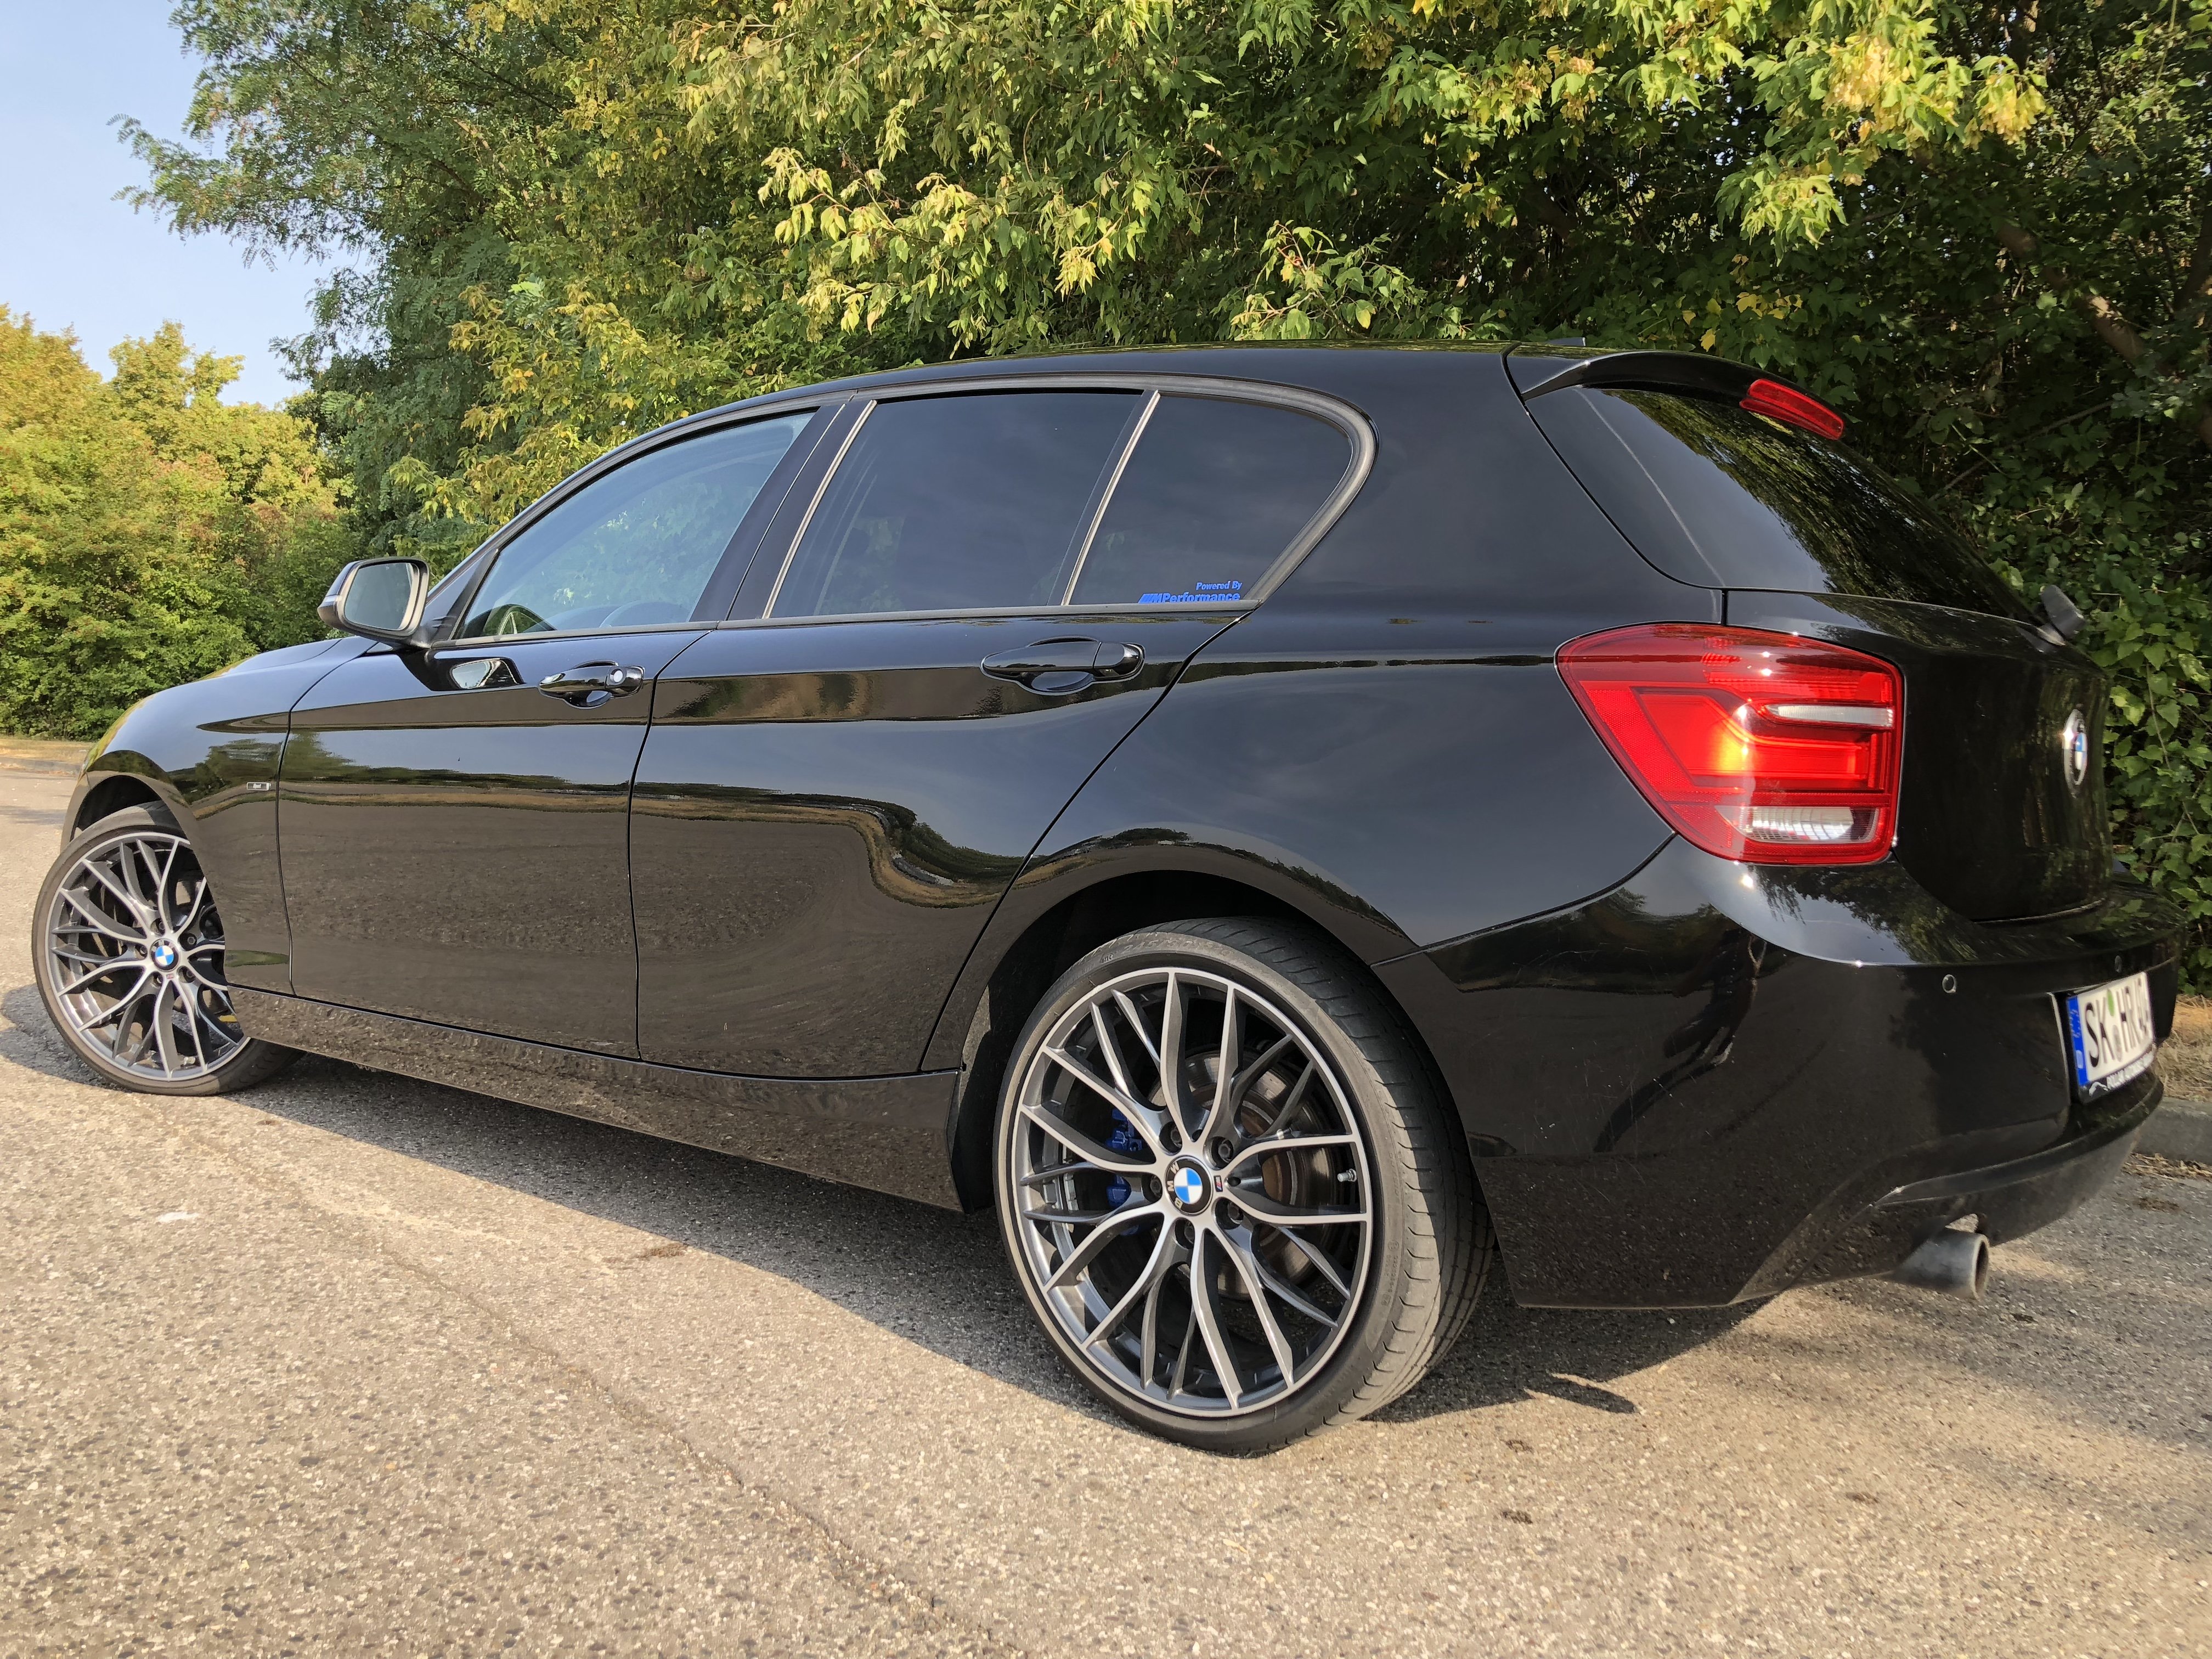 BMW – 1er – ORIGINAL BMW – M Doppelspeiche 405 – Silber-Schwarz – 19 Zoll